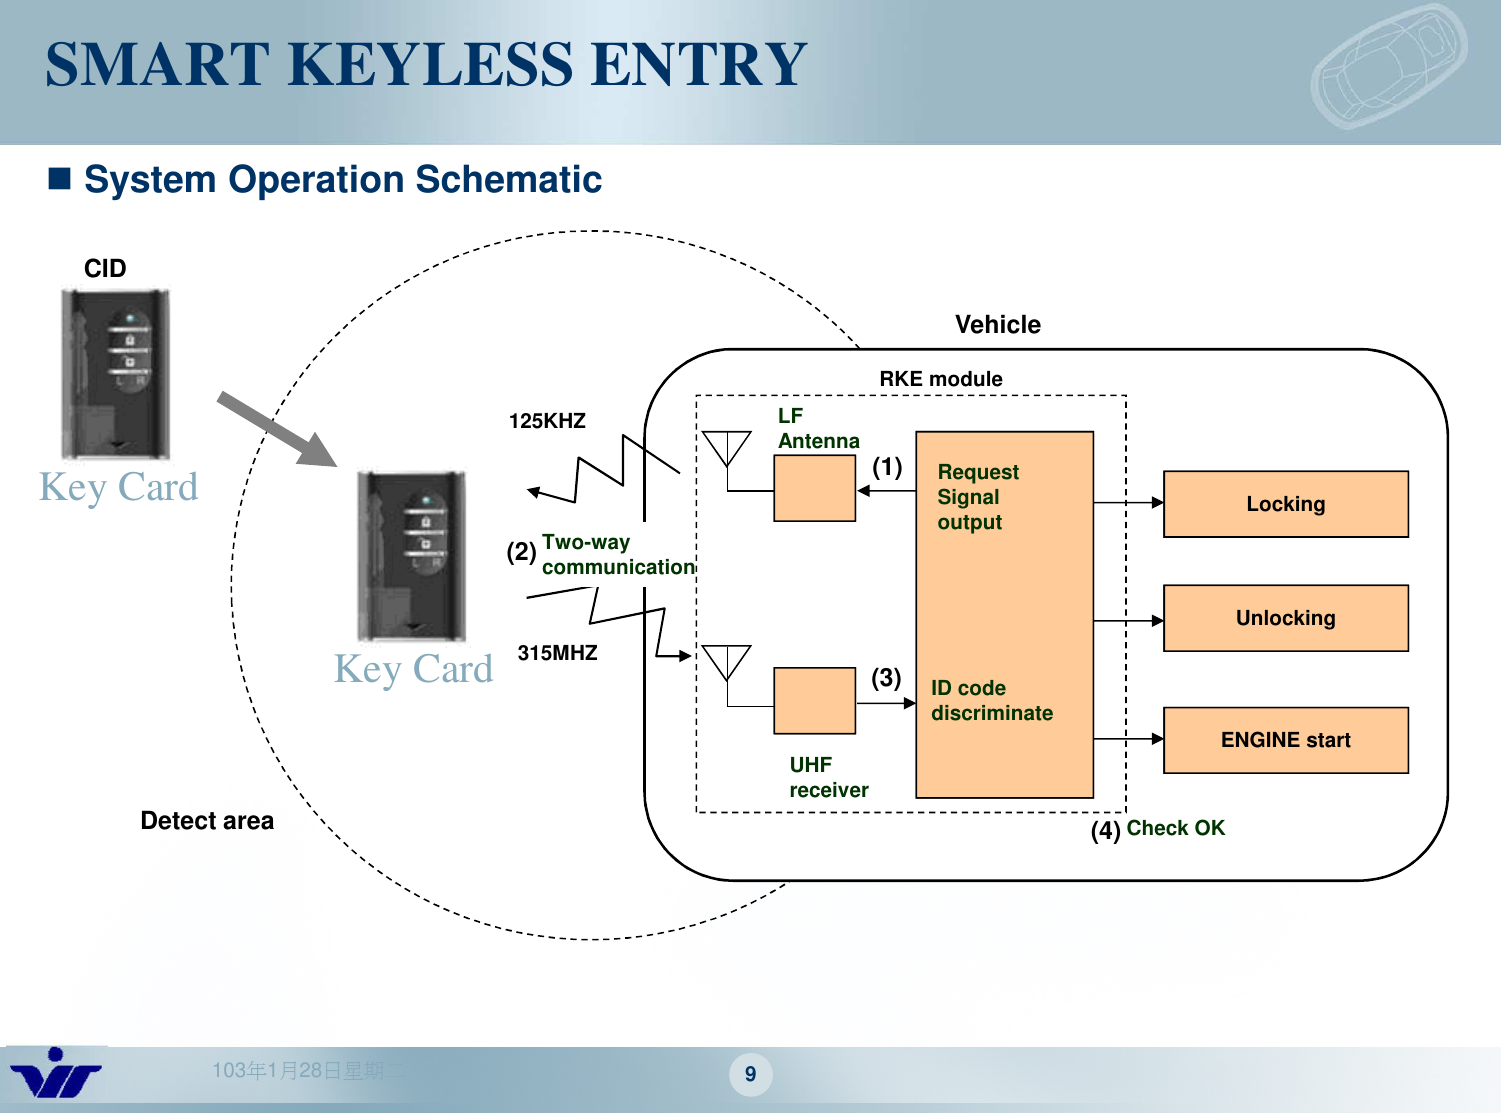 103年1月28日星期二 9SMART KEYLESS ENTRYRequest Signal outputRKE moduleLockingUnlockingENGINE startUHF receiverLF Antenna125KHZ315MHZ ID code discriminateTwo-way communicationCheck OKVehicle(1)(2)(3)(4)CIDDetect areaSystem Operation SchematicKey CardKey Card